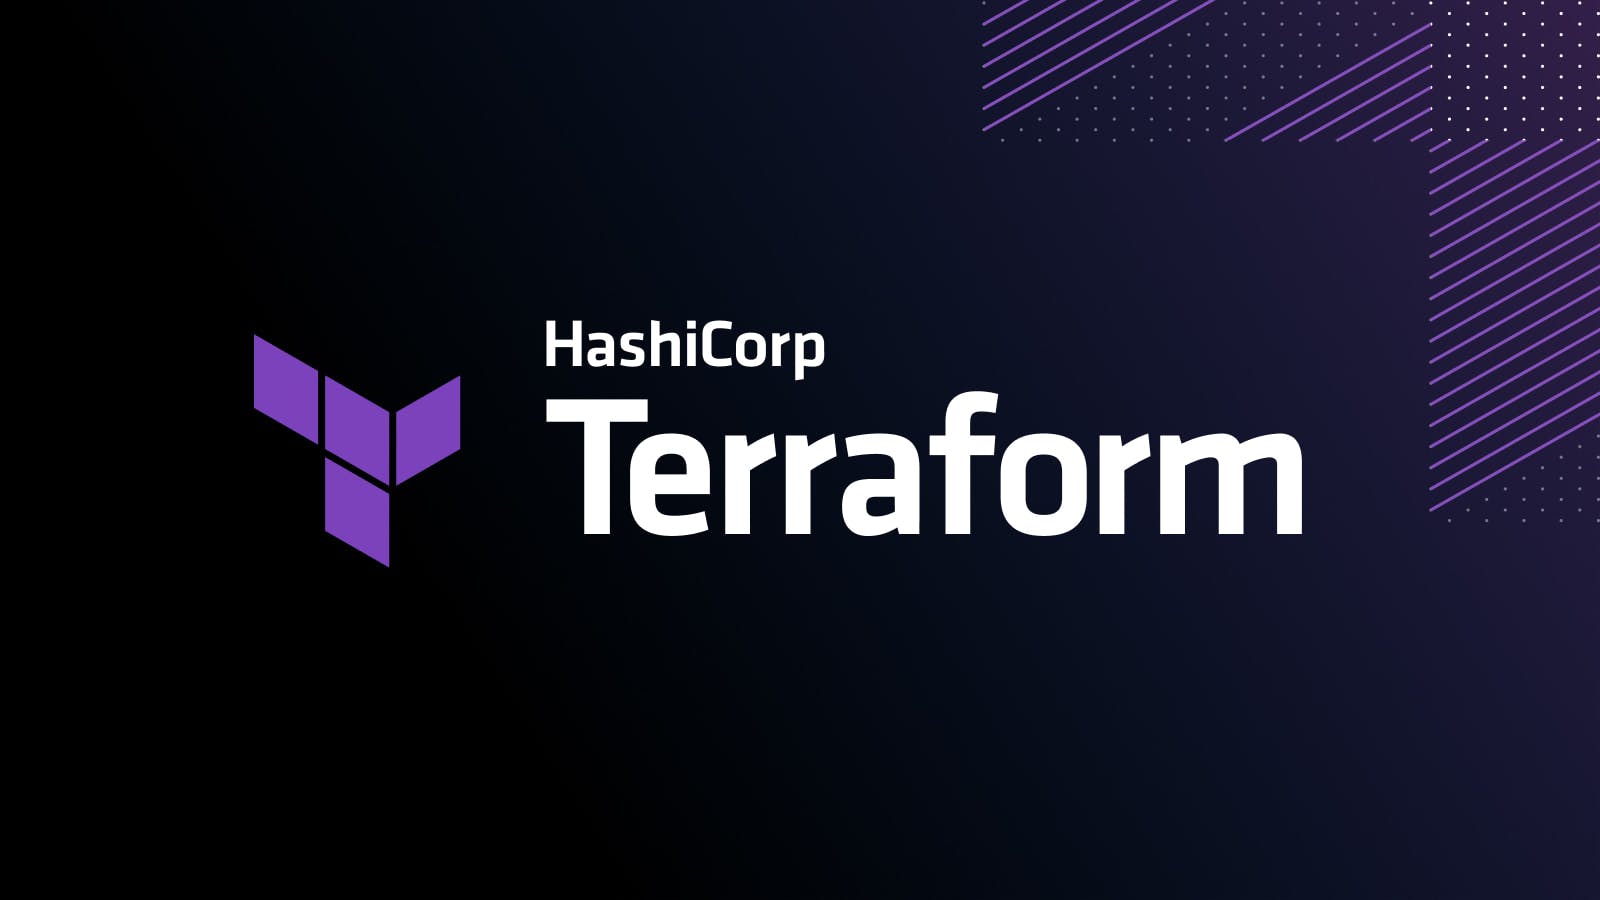 Terraform extension for VS Code adds Terraform Cloud view